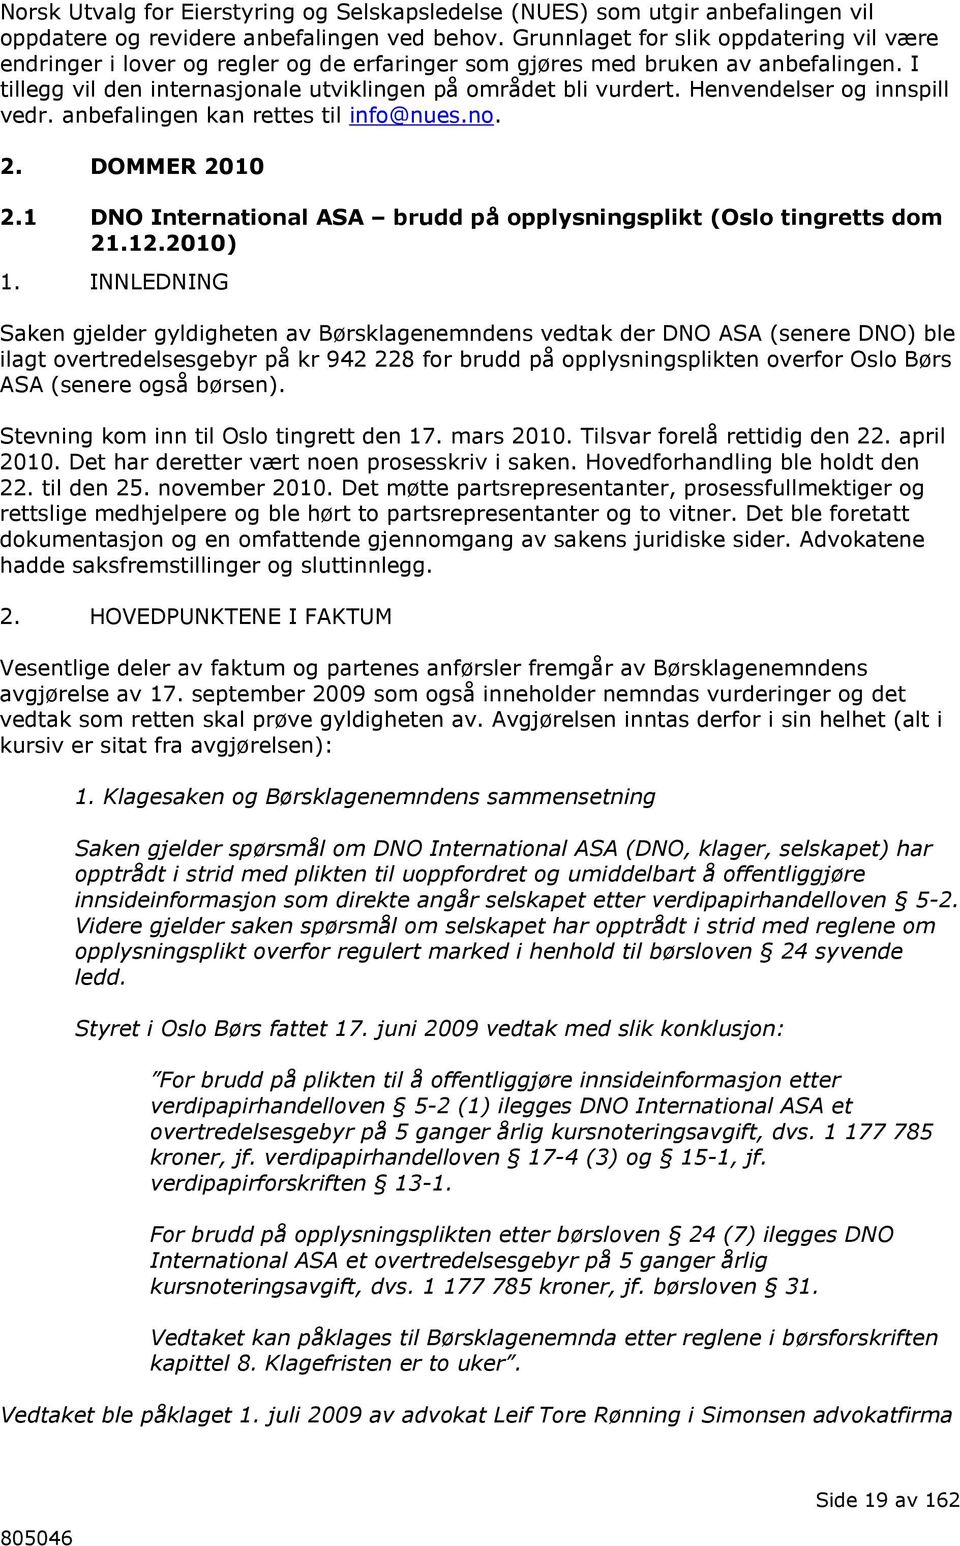 Henvendelser og innspill vedr. anbefalingen kan rettes til info@nues.no. 2. DOMMER 2010 2.1 DNO International ASA brudd på opplysningsplikt (Oslo tingretts dom 21.12.2010) 1.